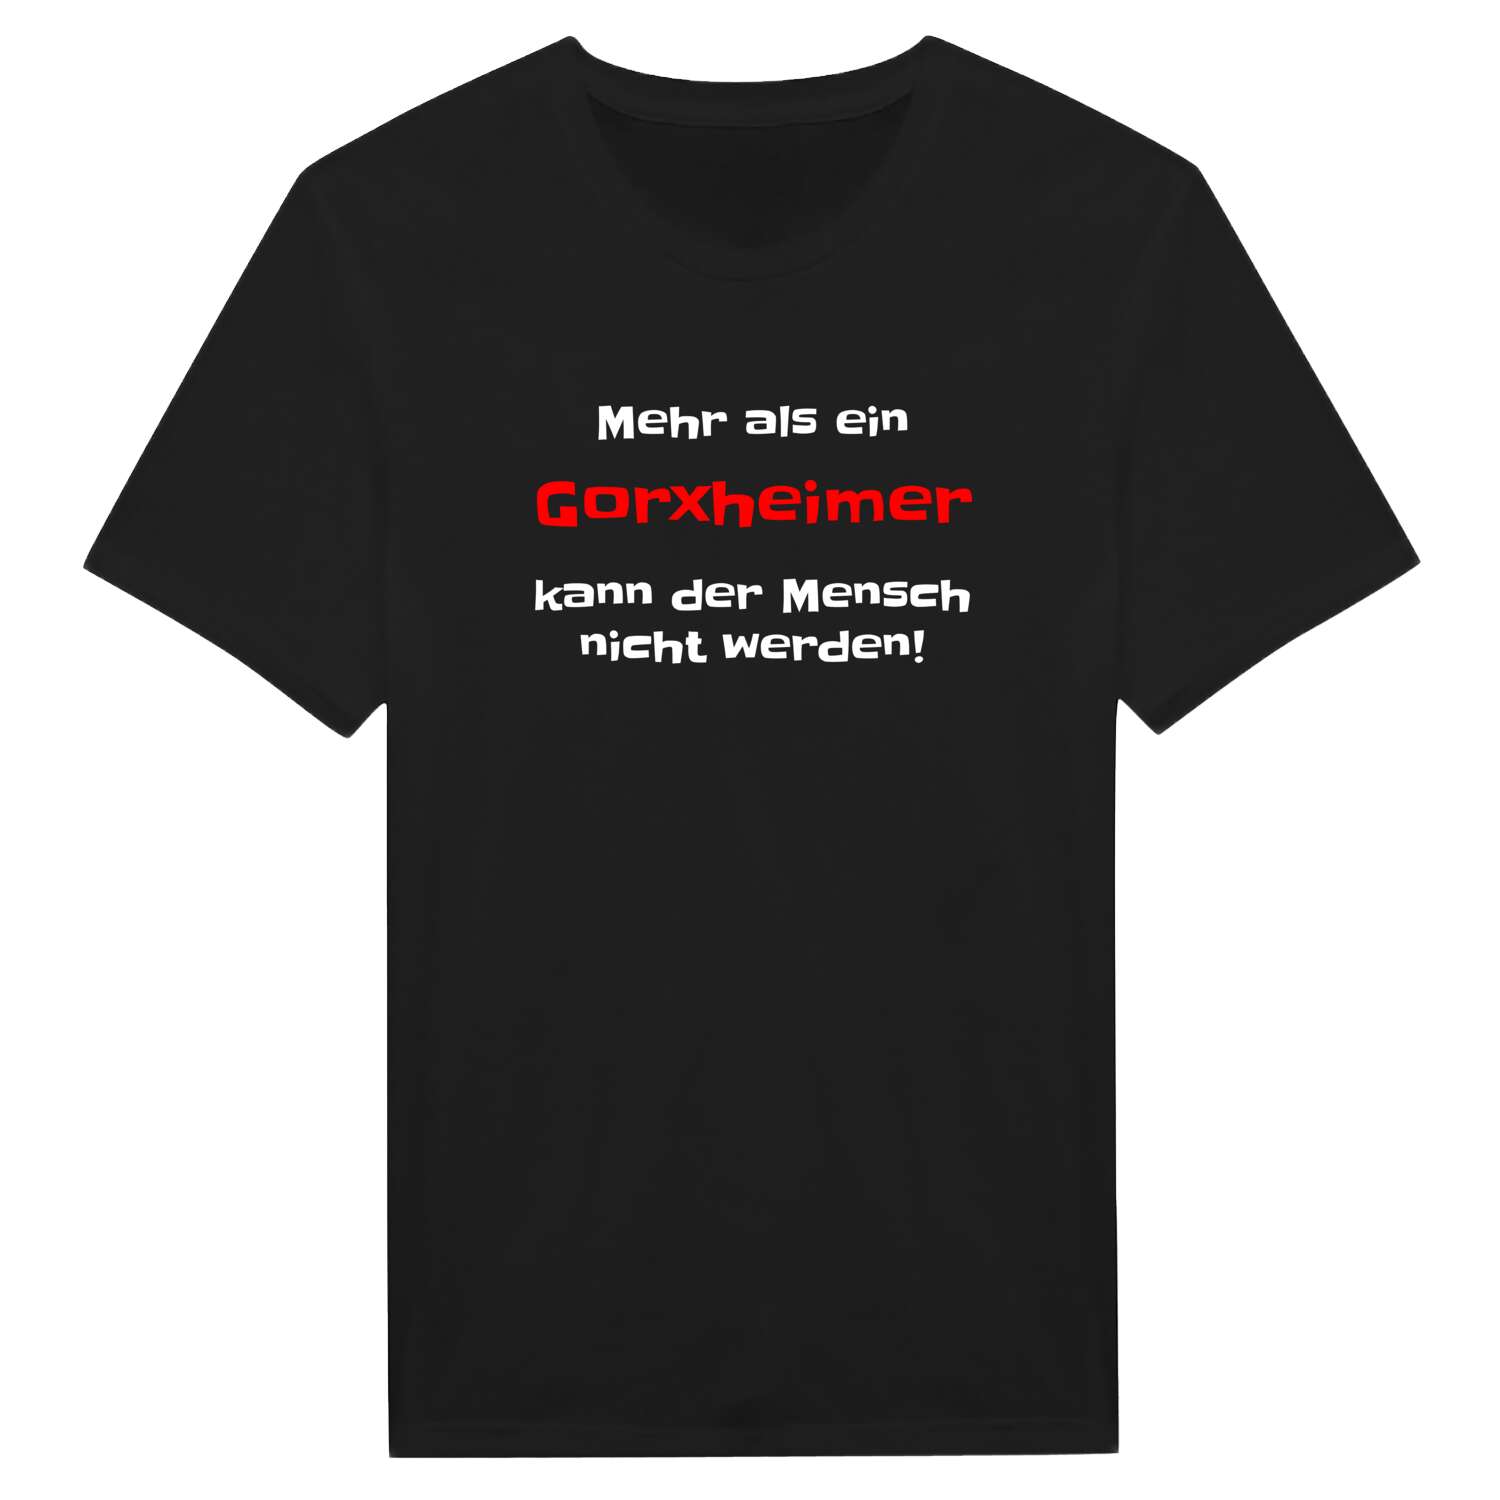 Gorxheim T-Shirt »Mehr als ein«